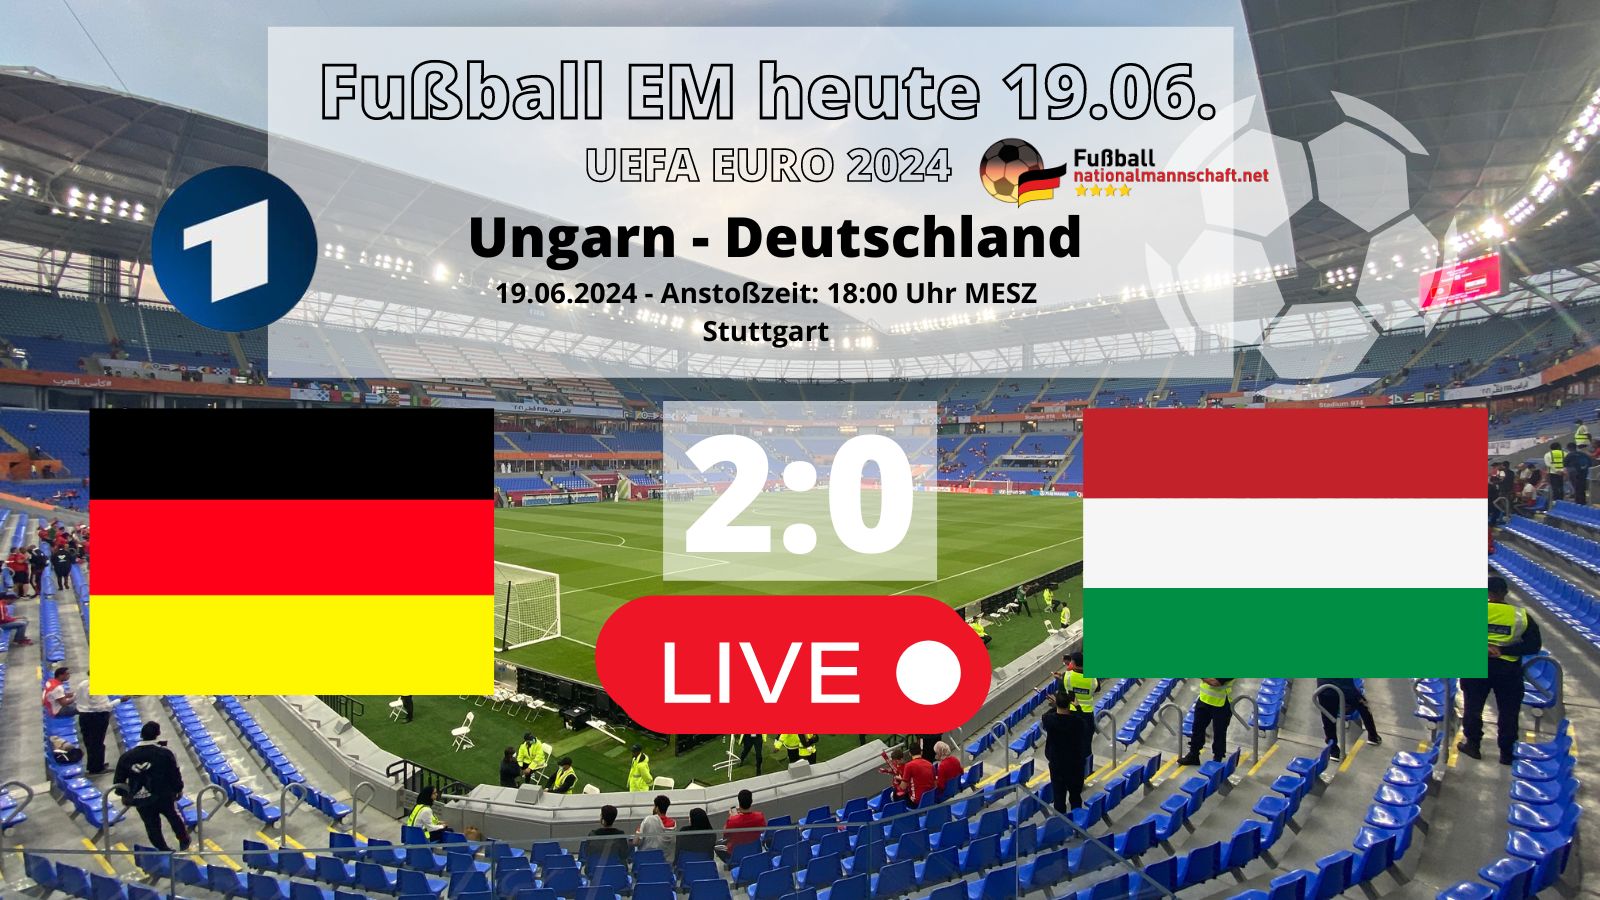 2:0 Länderspiel Deutschland gegen Ungarn am 2.Vorrundenspieltag am 19.6. um 18 Uhr in Stuttgart